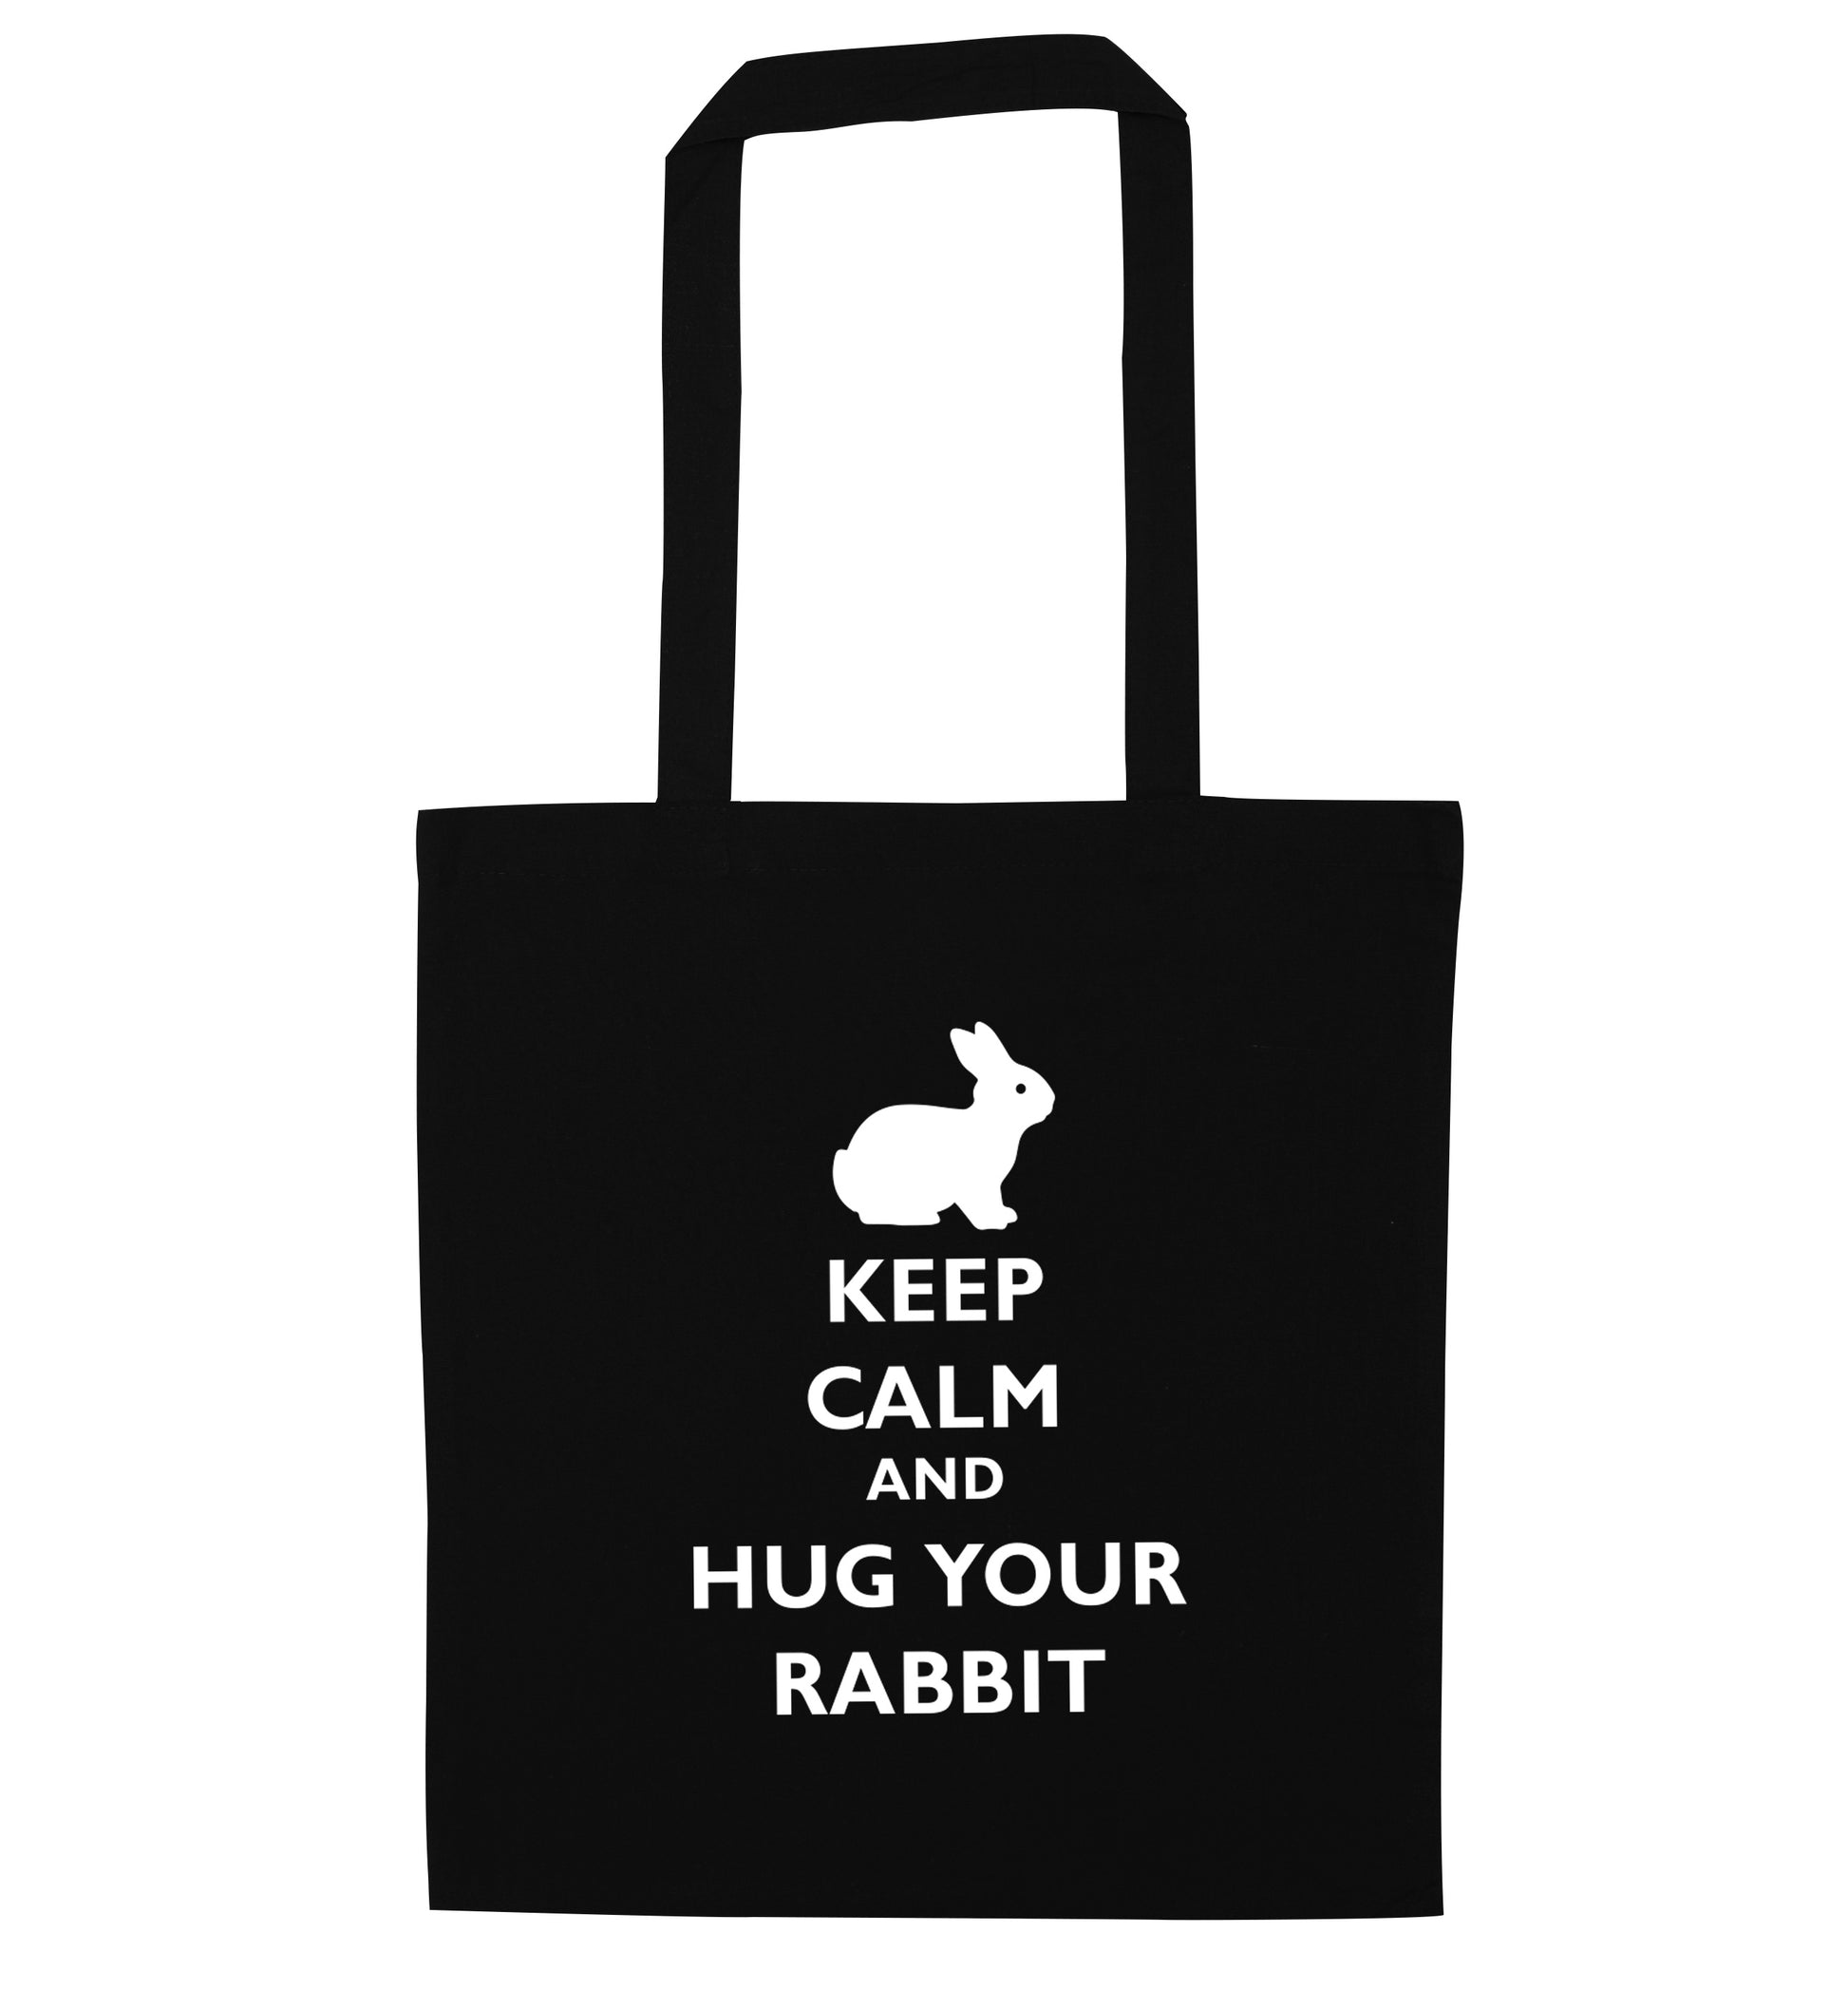 Keep calm and hug your rabbit black tote bag